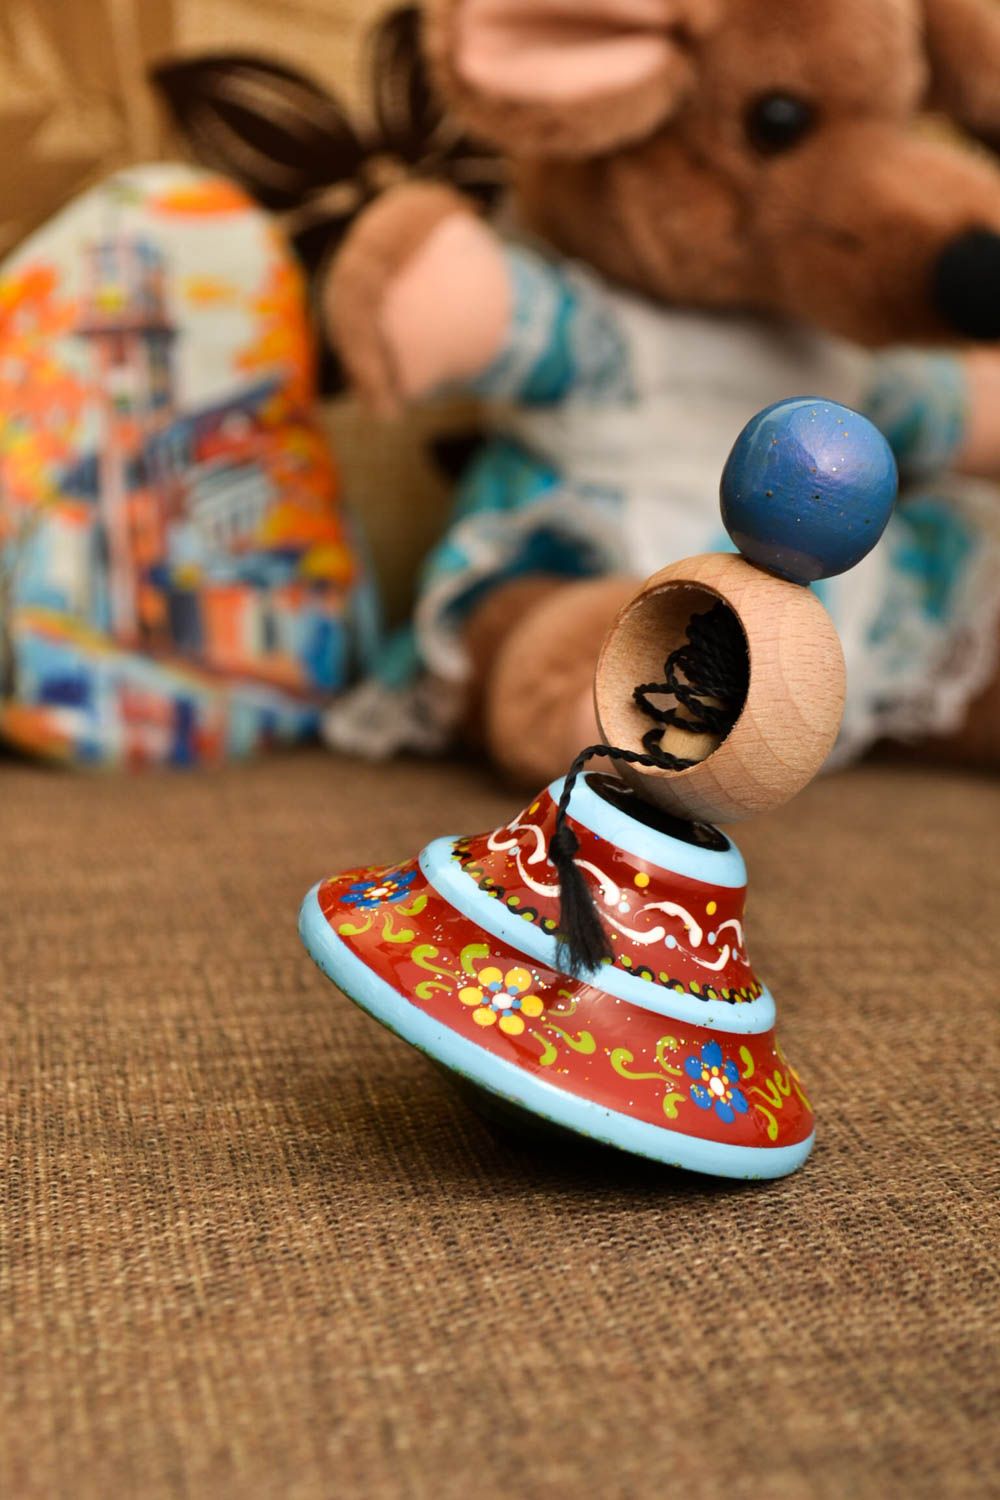 Trompo de madera hecho a mano regalo original juguete para niños con ornamentos foto 1